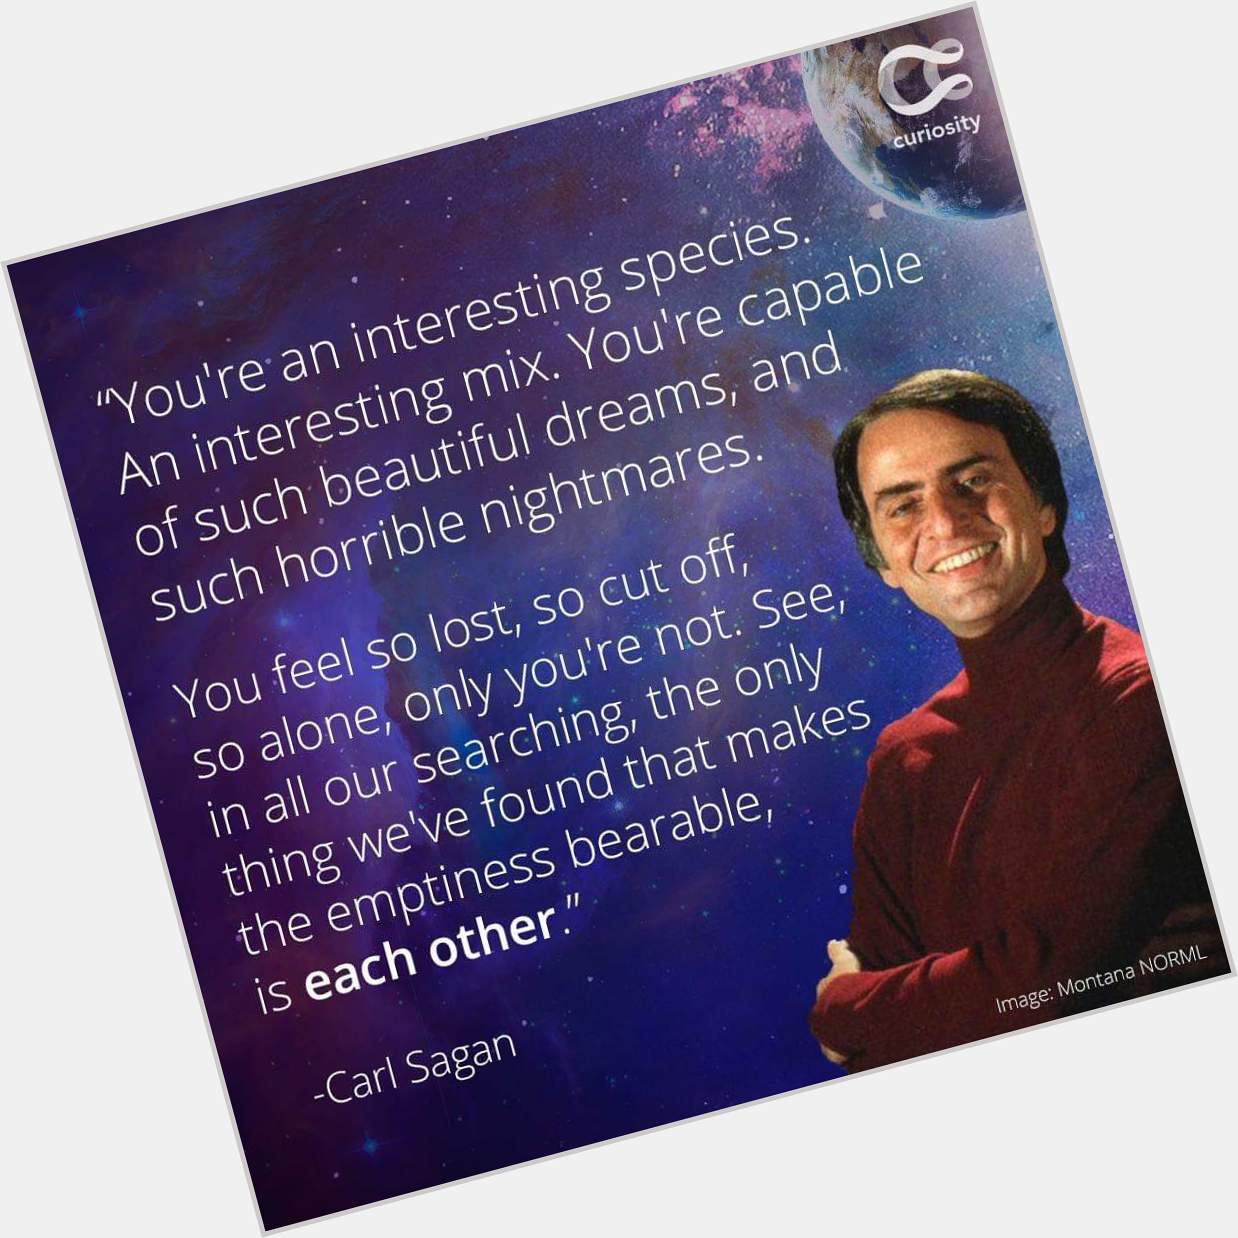 Happy birthday Carl Sagan! 